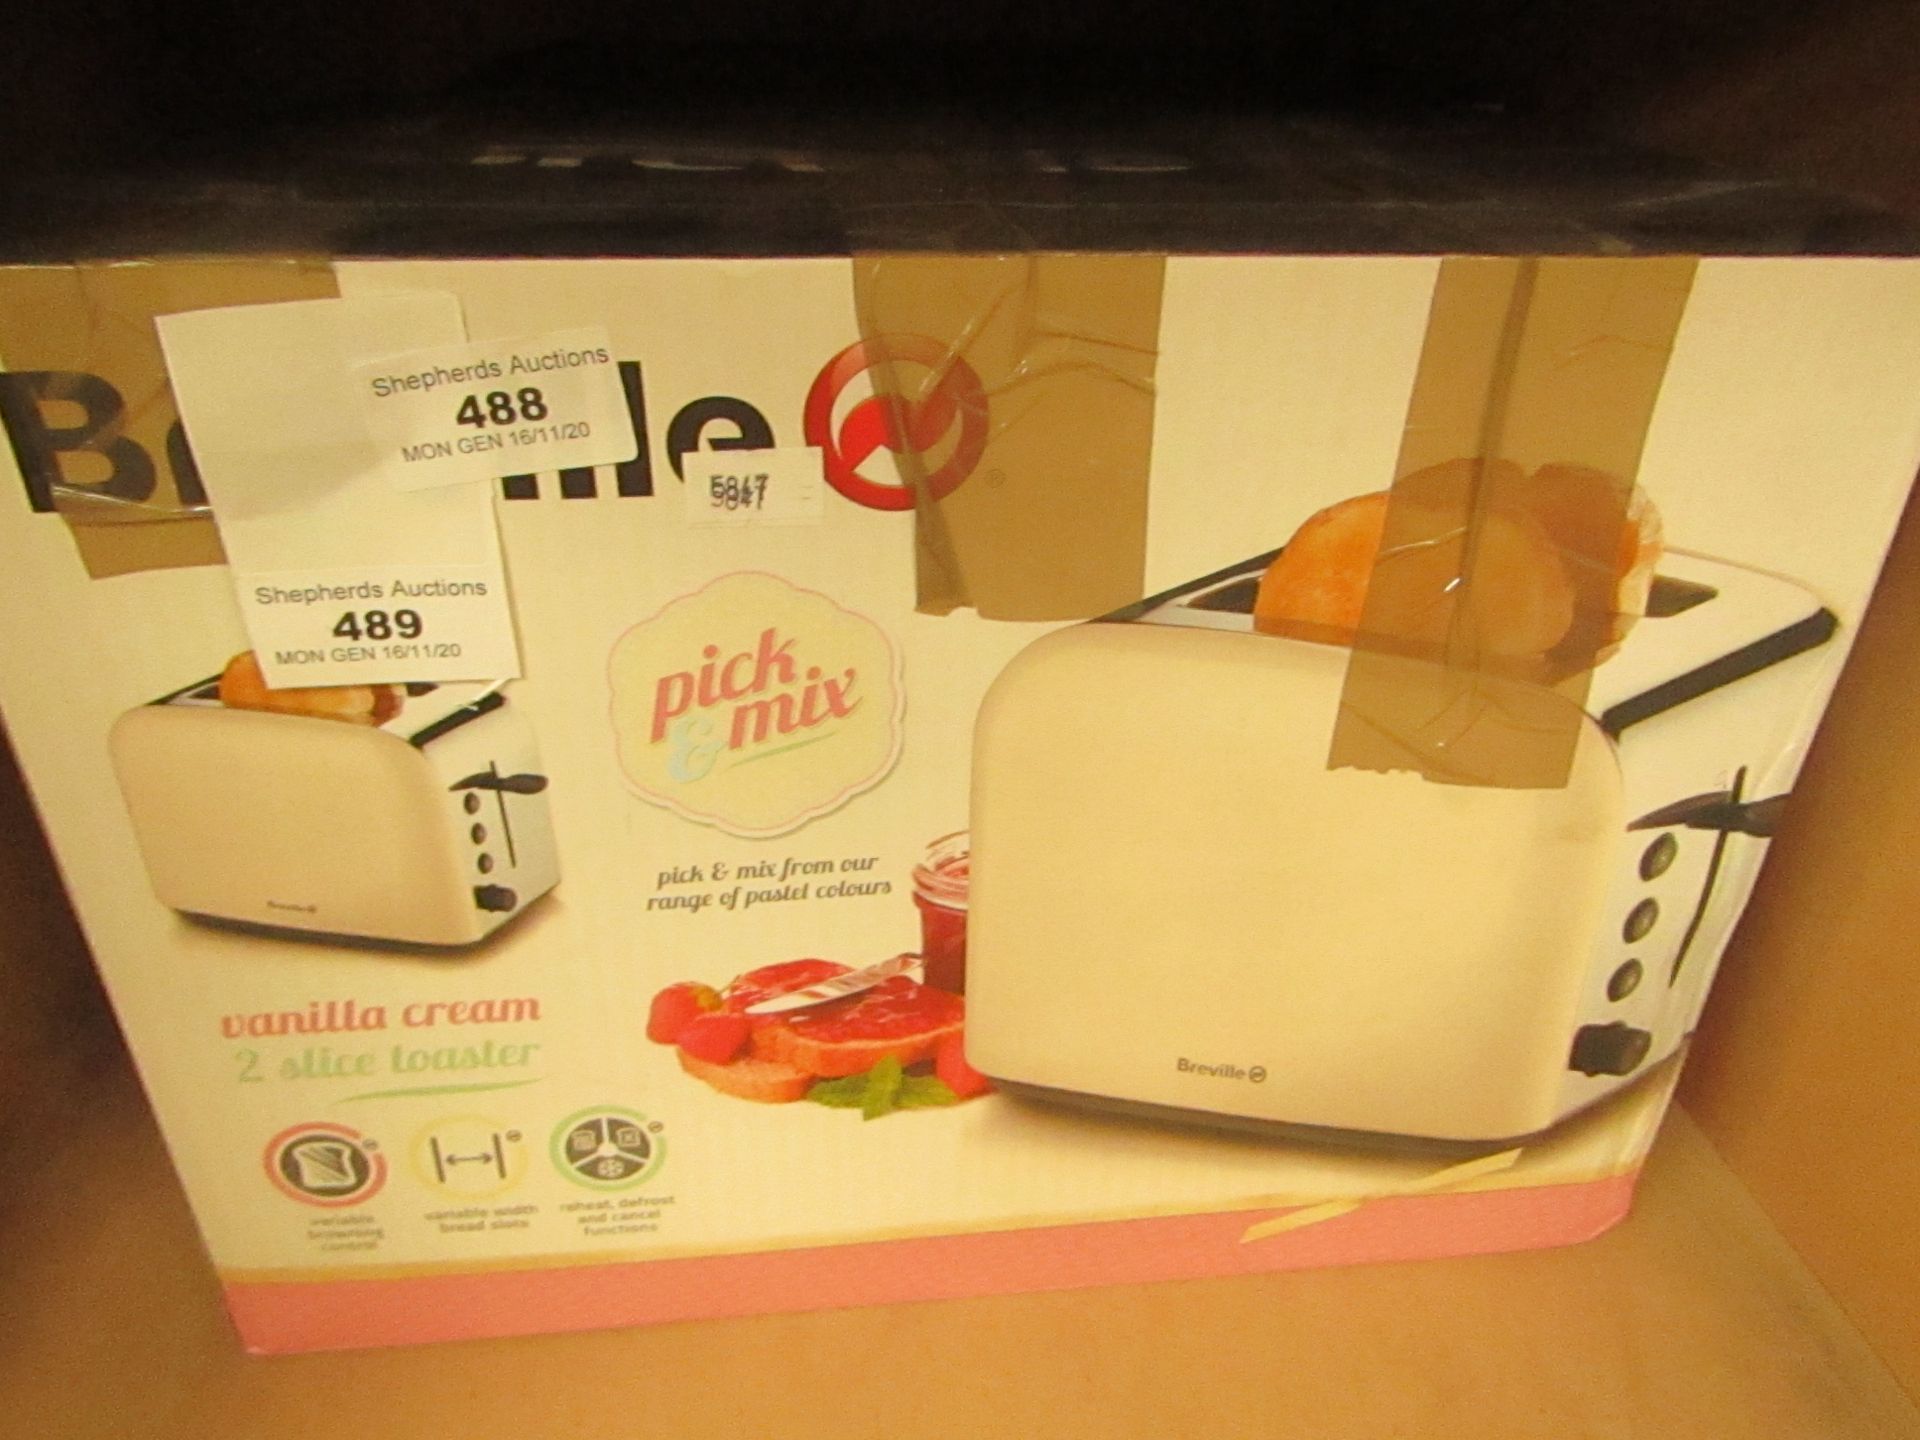 Breville - Vanilla Cream 2 Slice Toaster - unchecked & Boxed